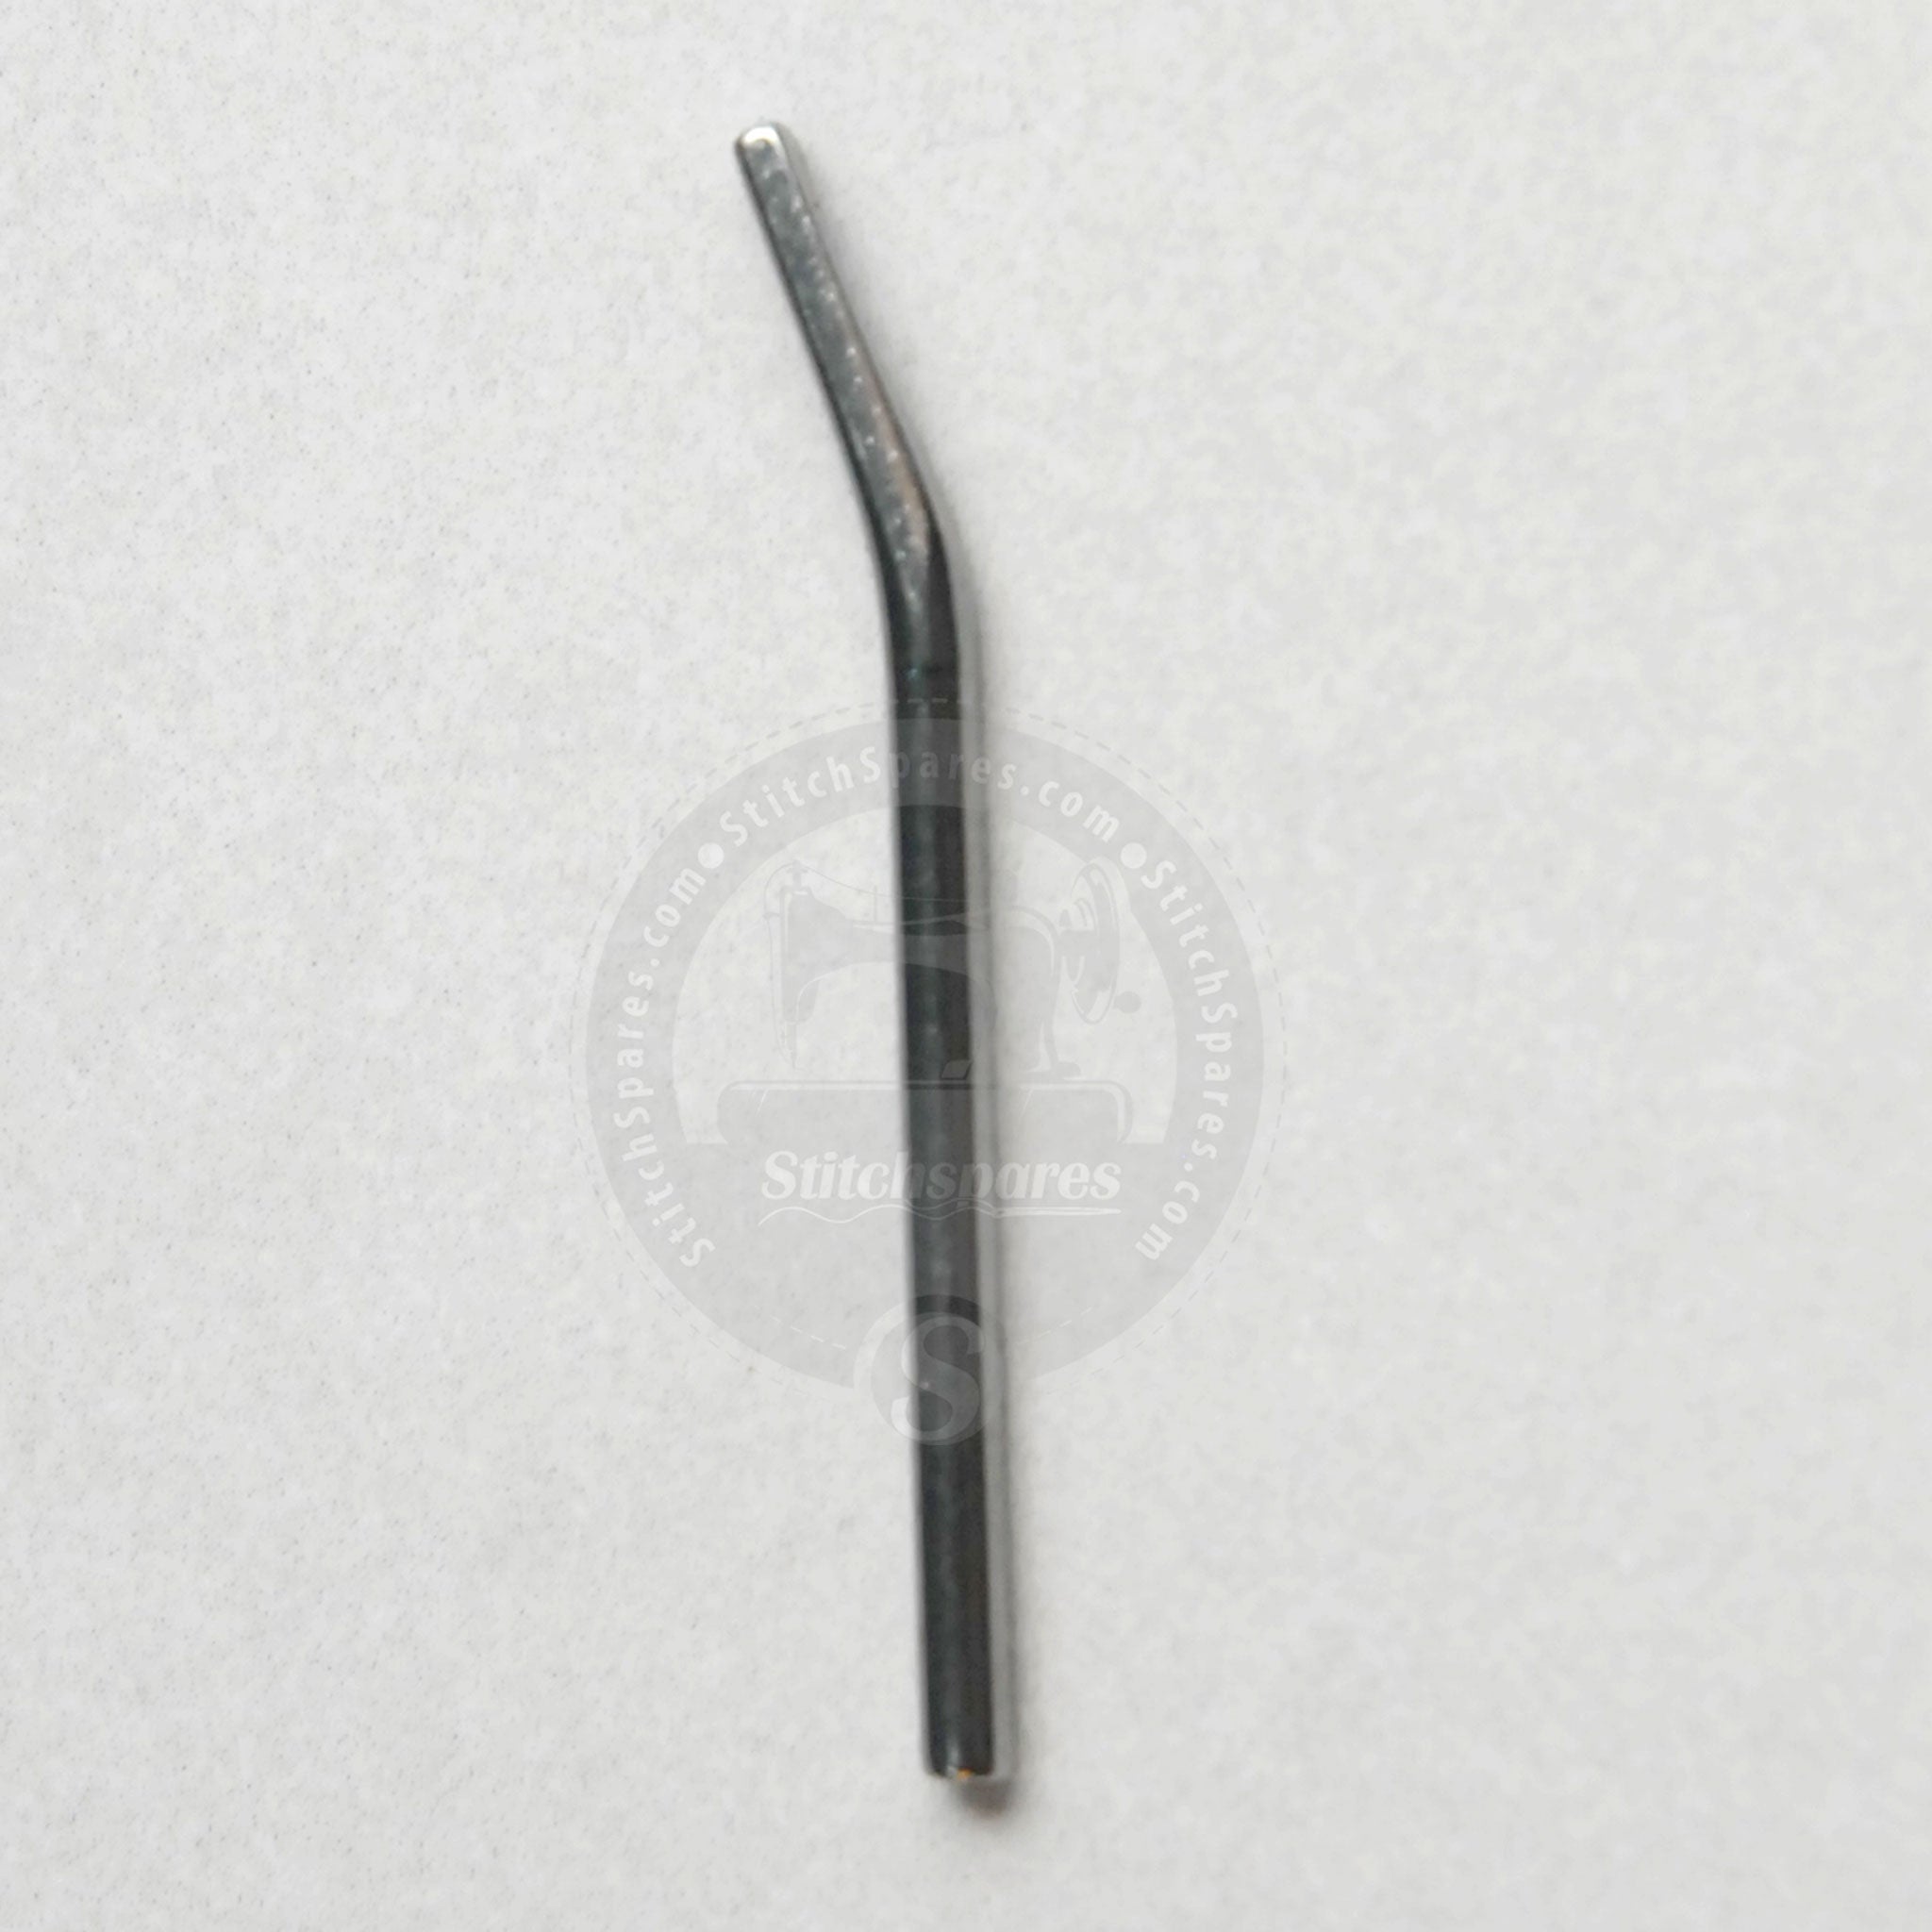 19-437 Retenedor Kansai Special DFB-1404, DFB-1412 Pieza de repuesto para máquina de coser de agujas múltiples con sujeción de cinta y elástico